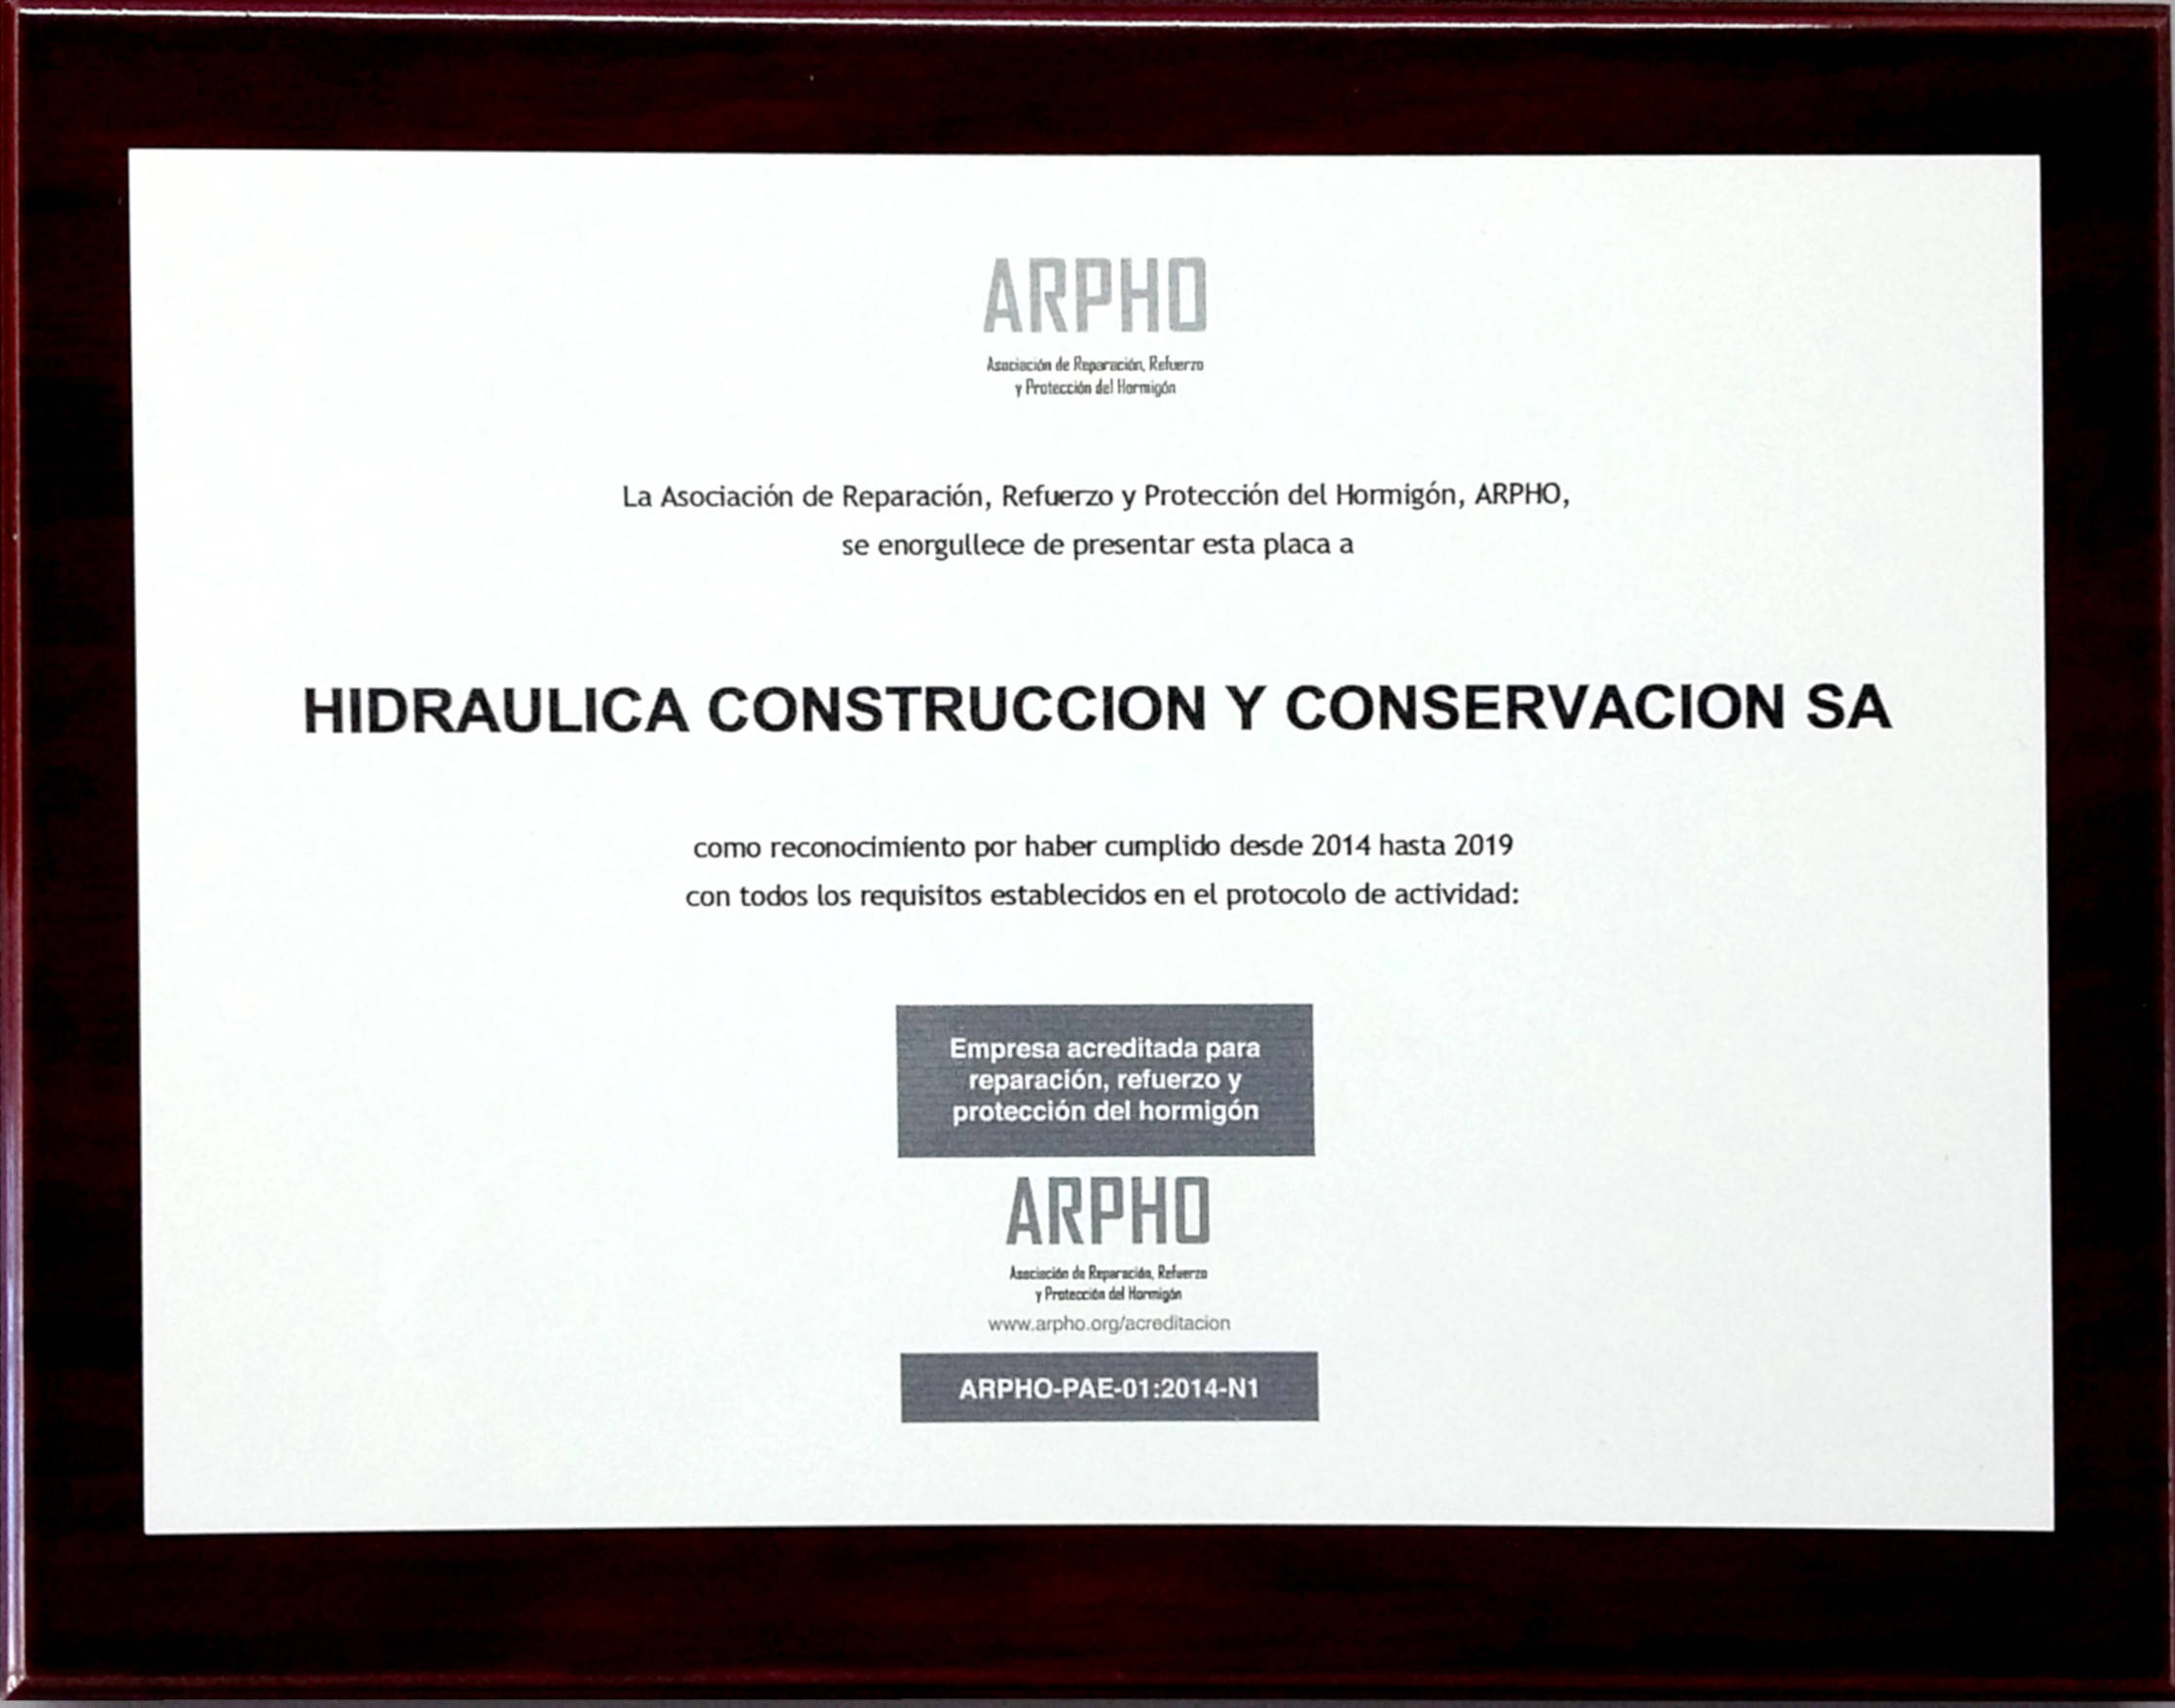 Reconocimiento de ARPHO a HCC por el cumplimiento de requisitos de la actividad reparación, refuerzo y protección del hormigón